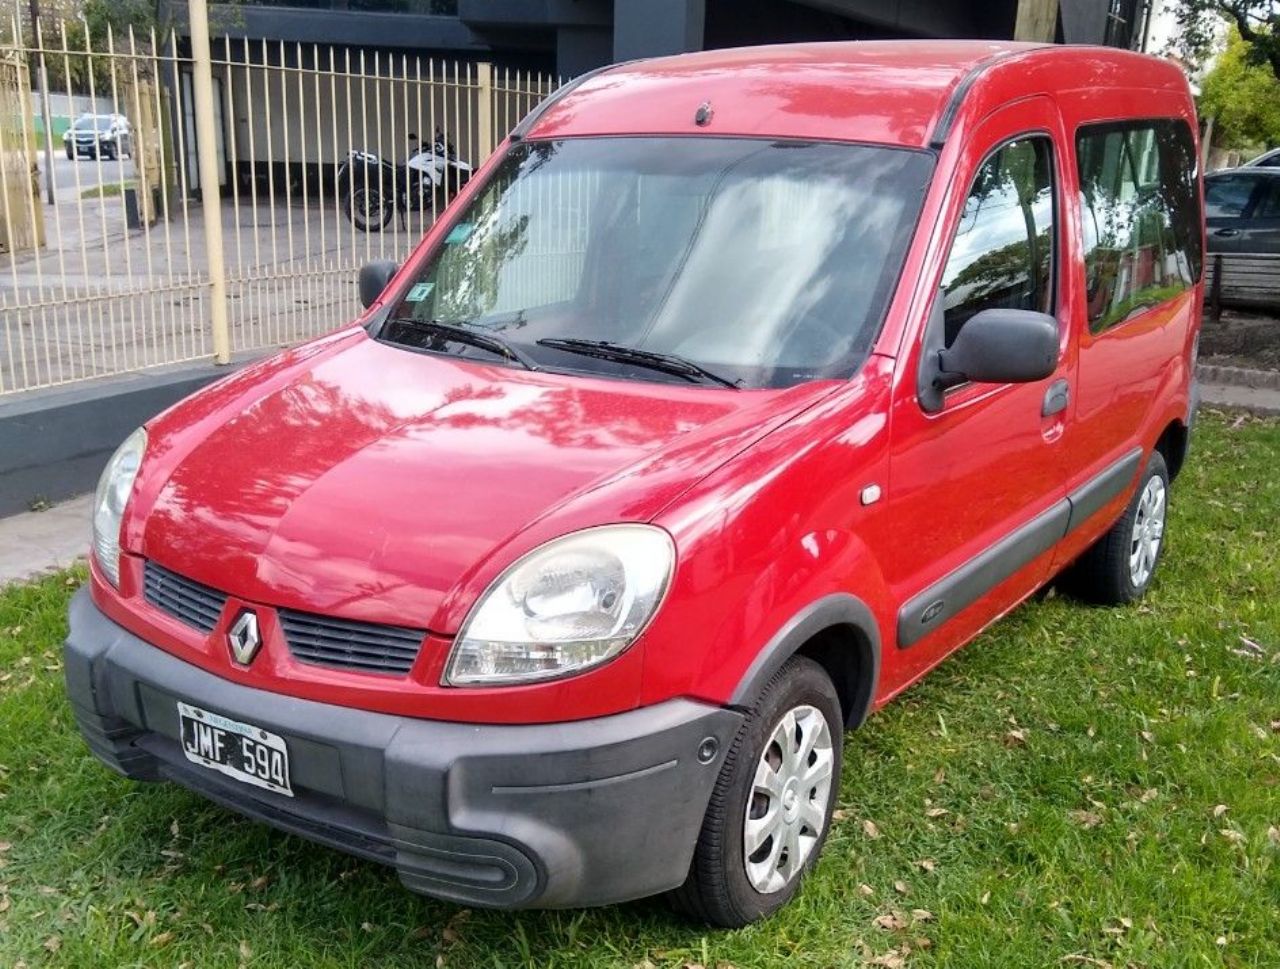 Renault Kangoo Usada en Buenos Aires, deRuedas